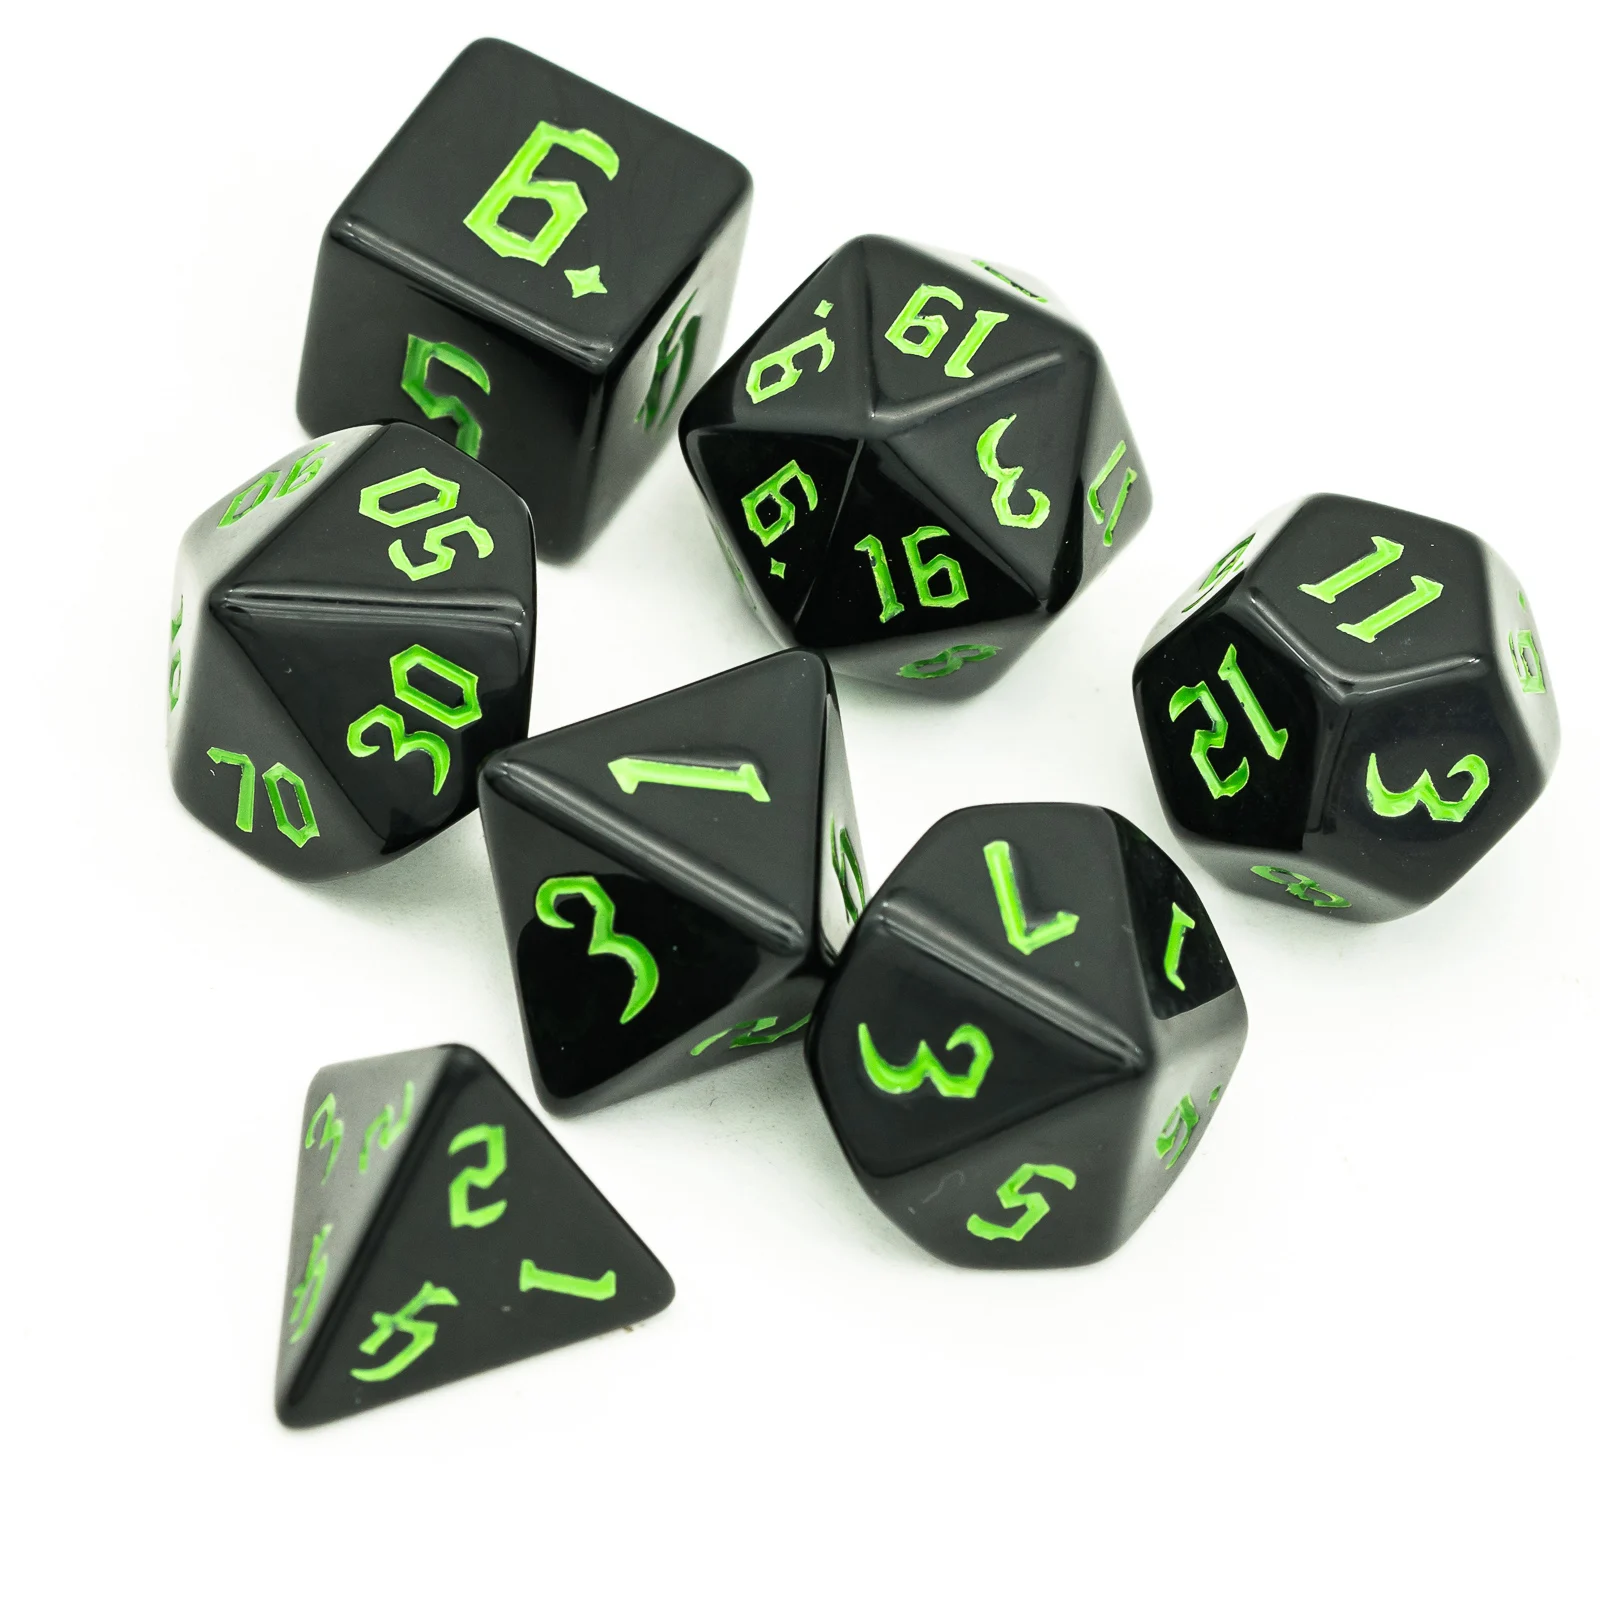 

Poludie 7Pcs/Set DND Dice Set Green Sickle Font Polyhedral Dice D4 D6 D8 D10 D% D12 D20 for Role playing Game D&D RPG MTG Dice